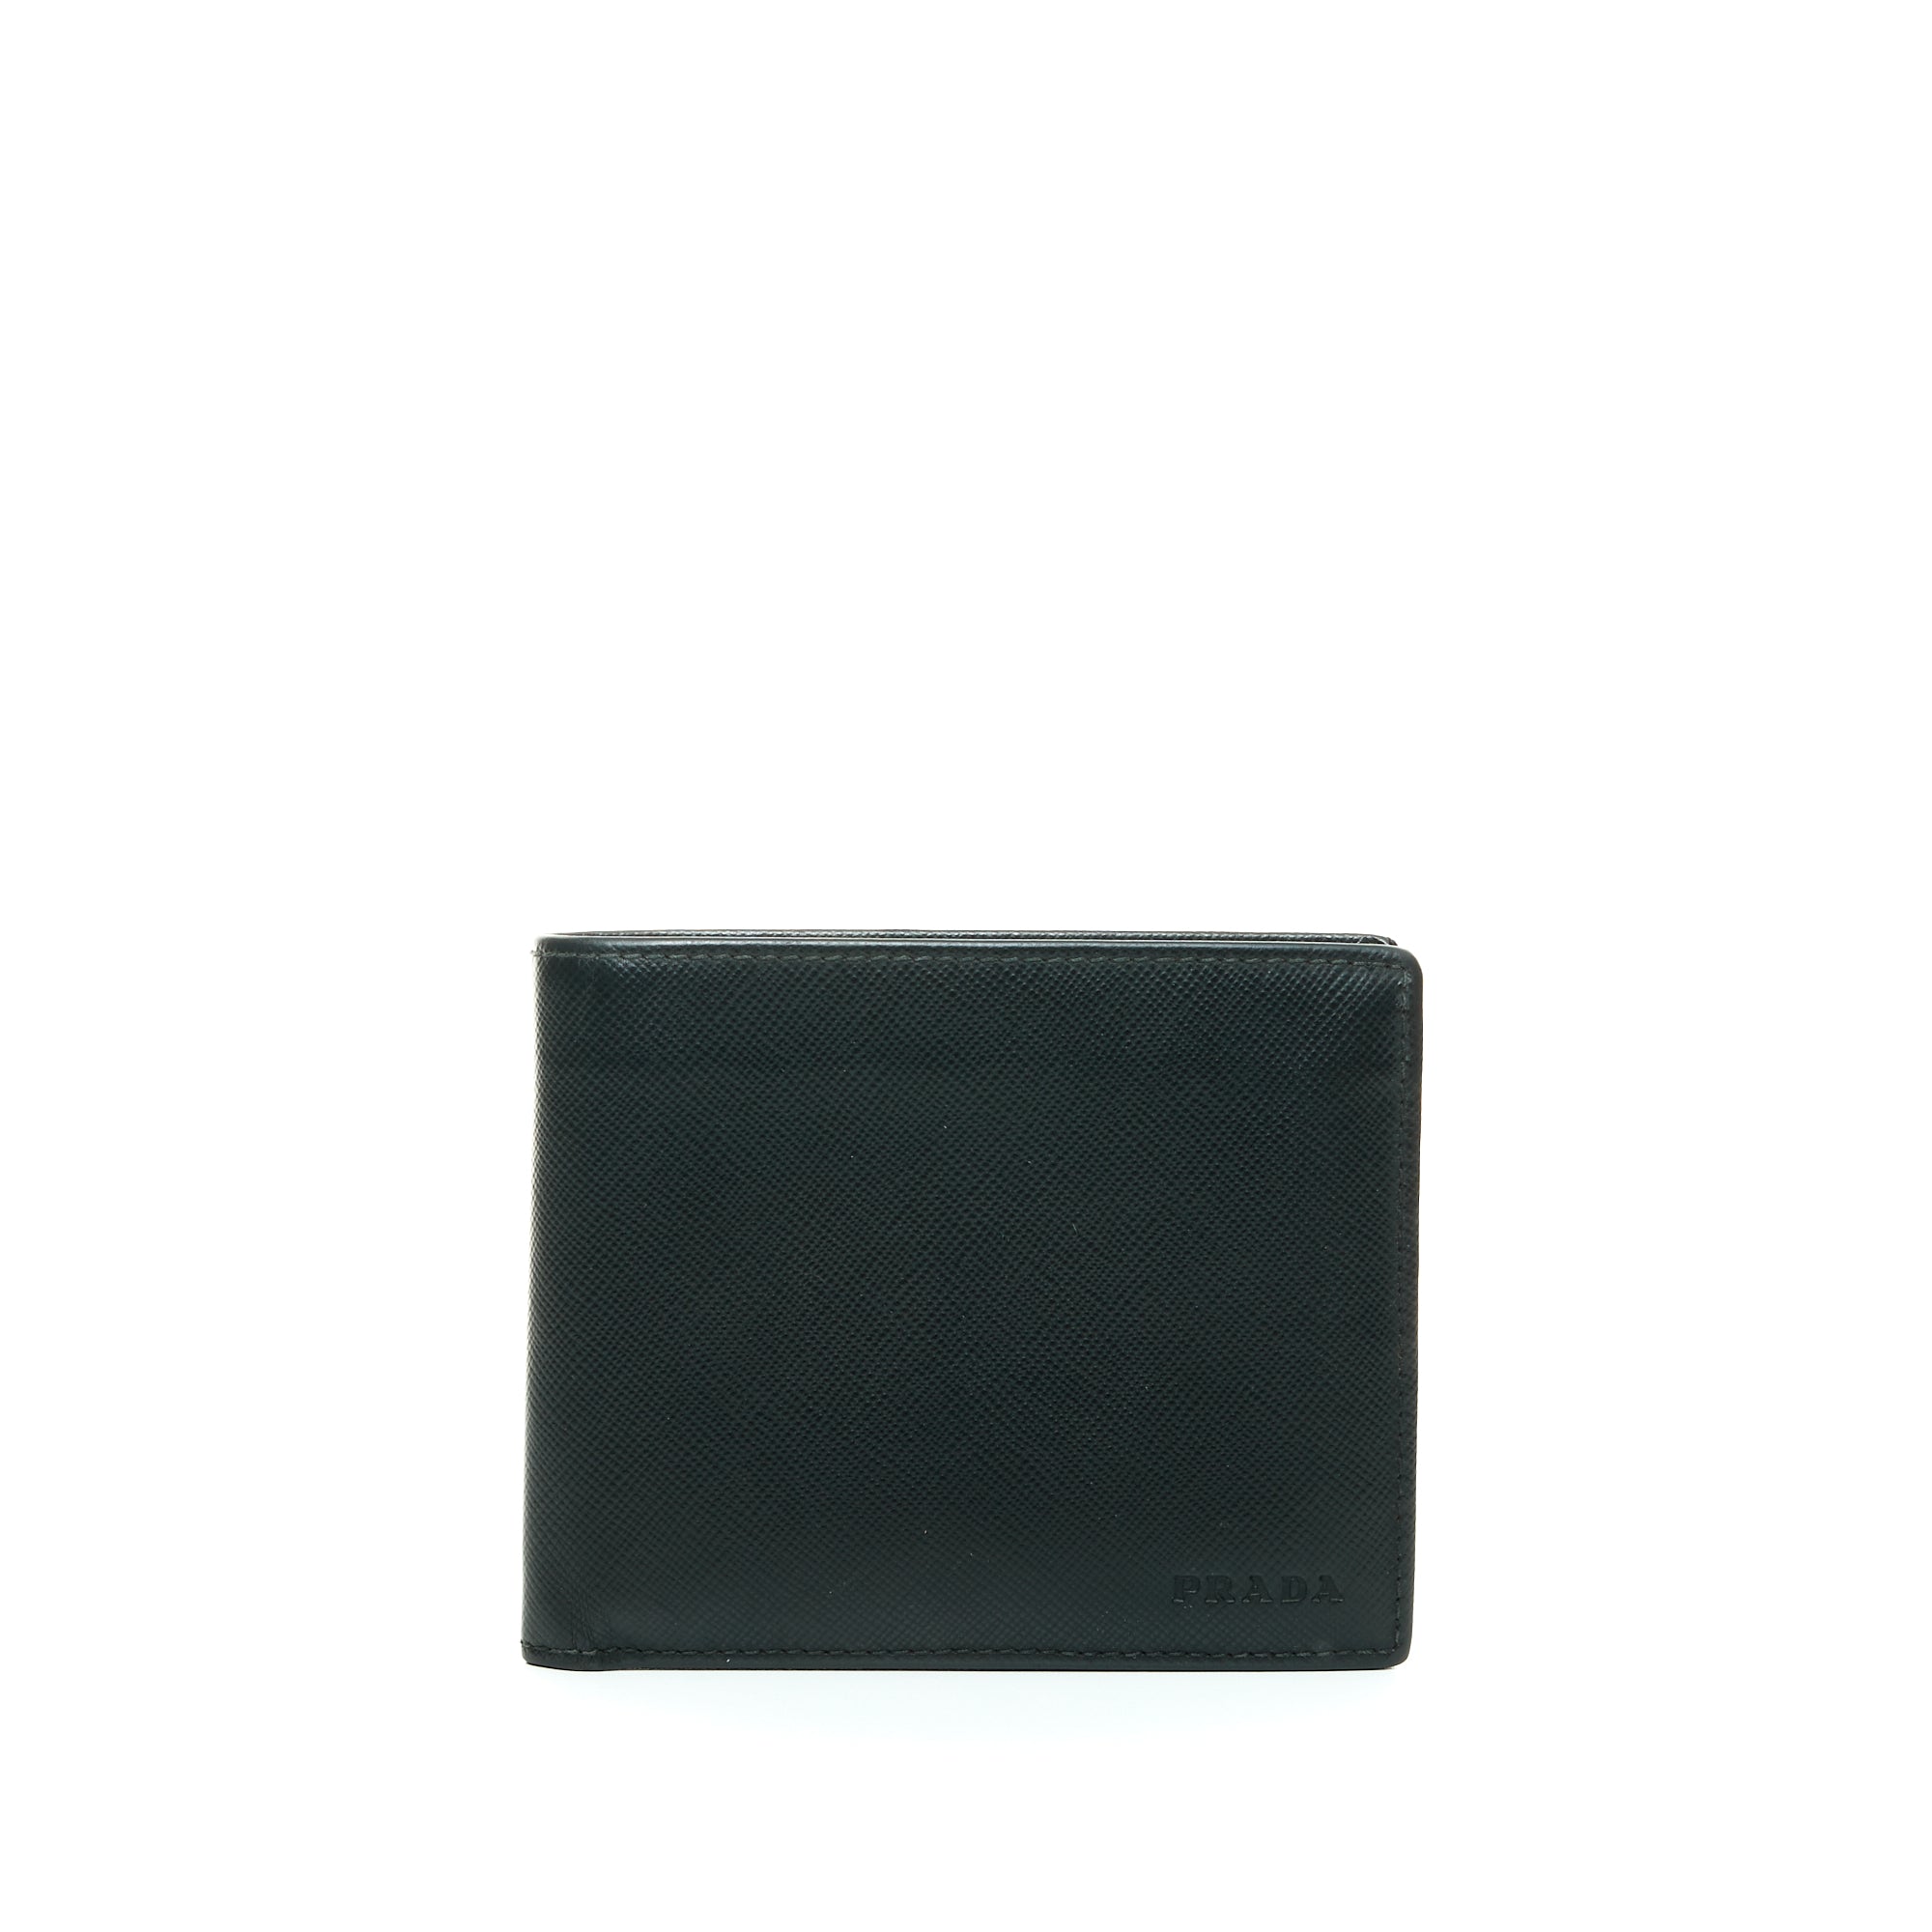 Amerigo Damier Wallet in Coated Canvas, Silver Hardware